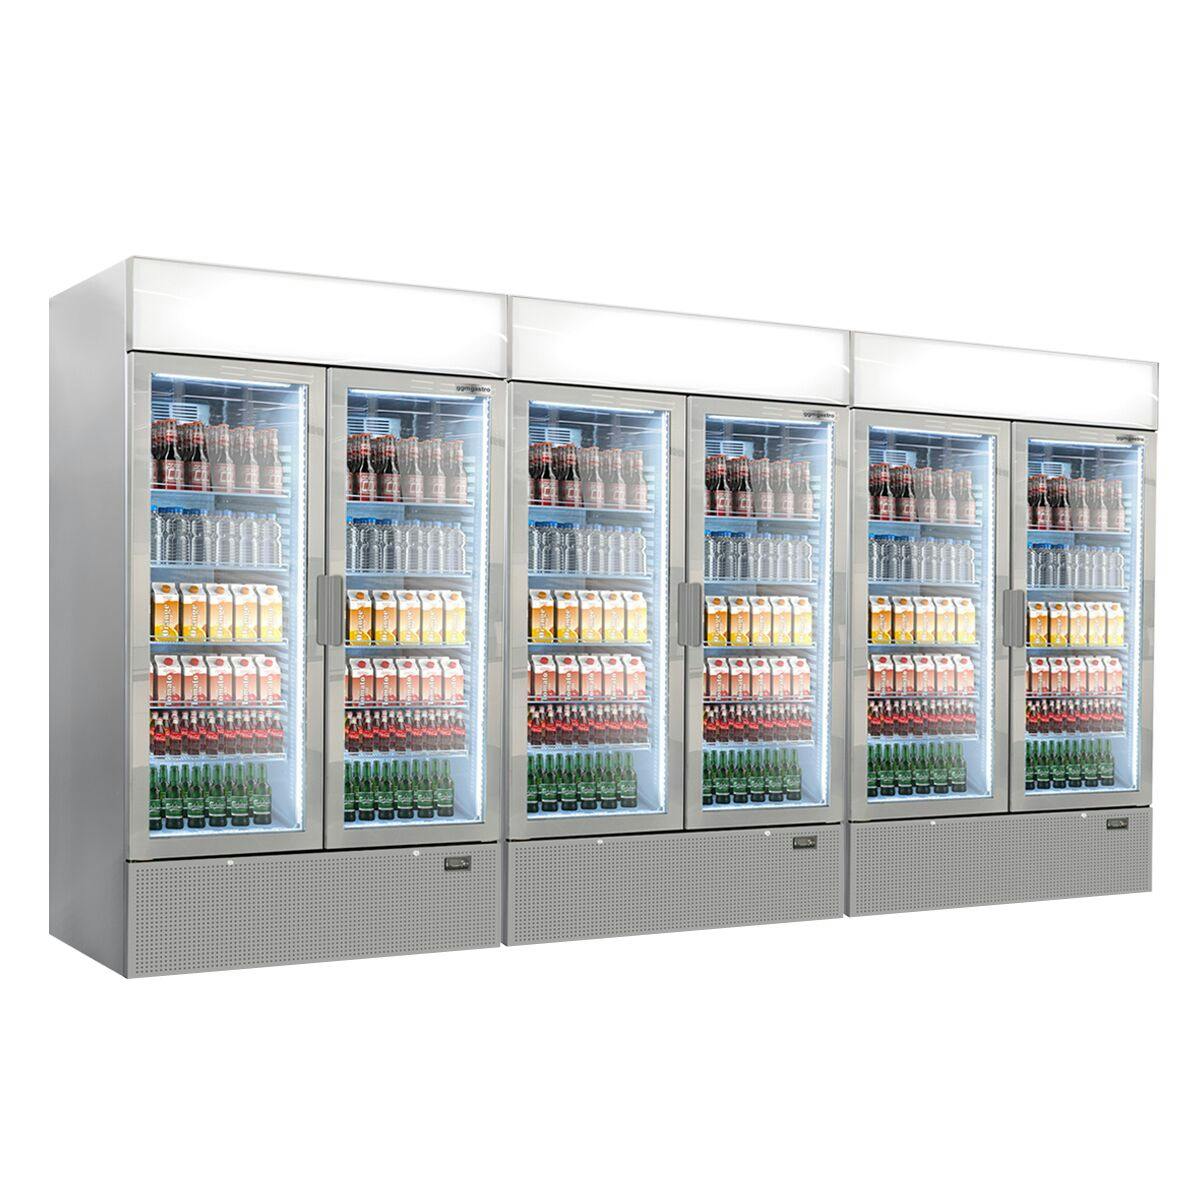 (3 pieces) Beverage refrigerator - 3144 litres (total) - grey